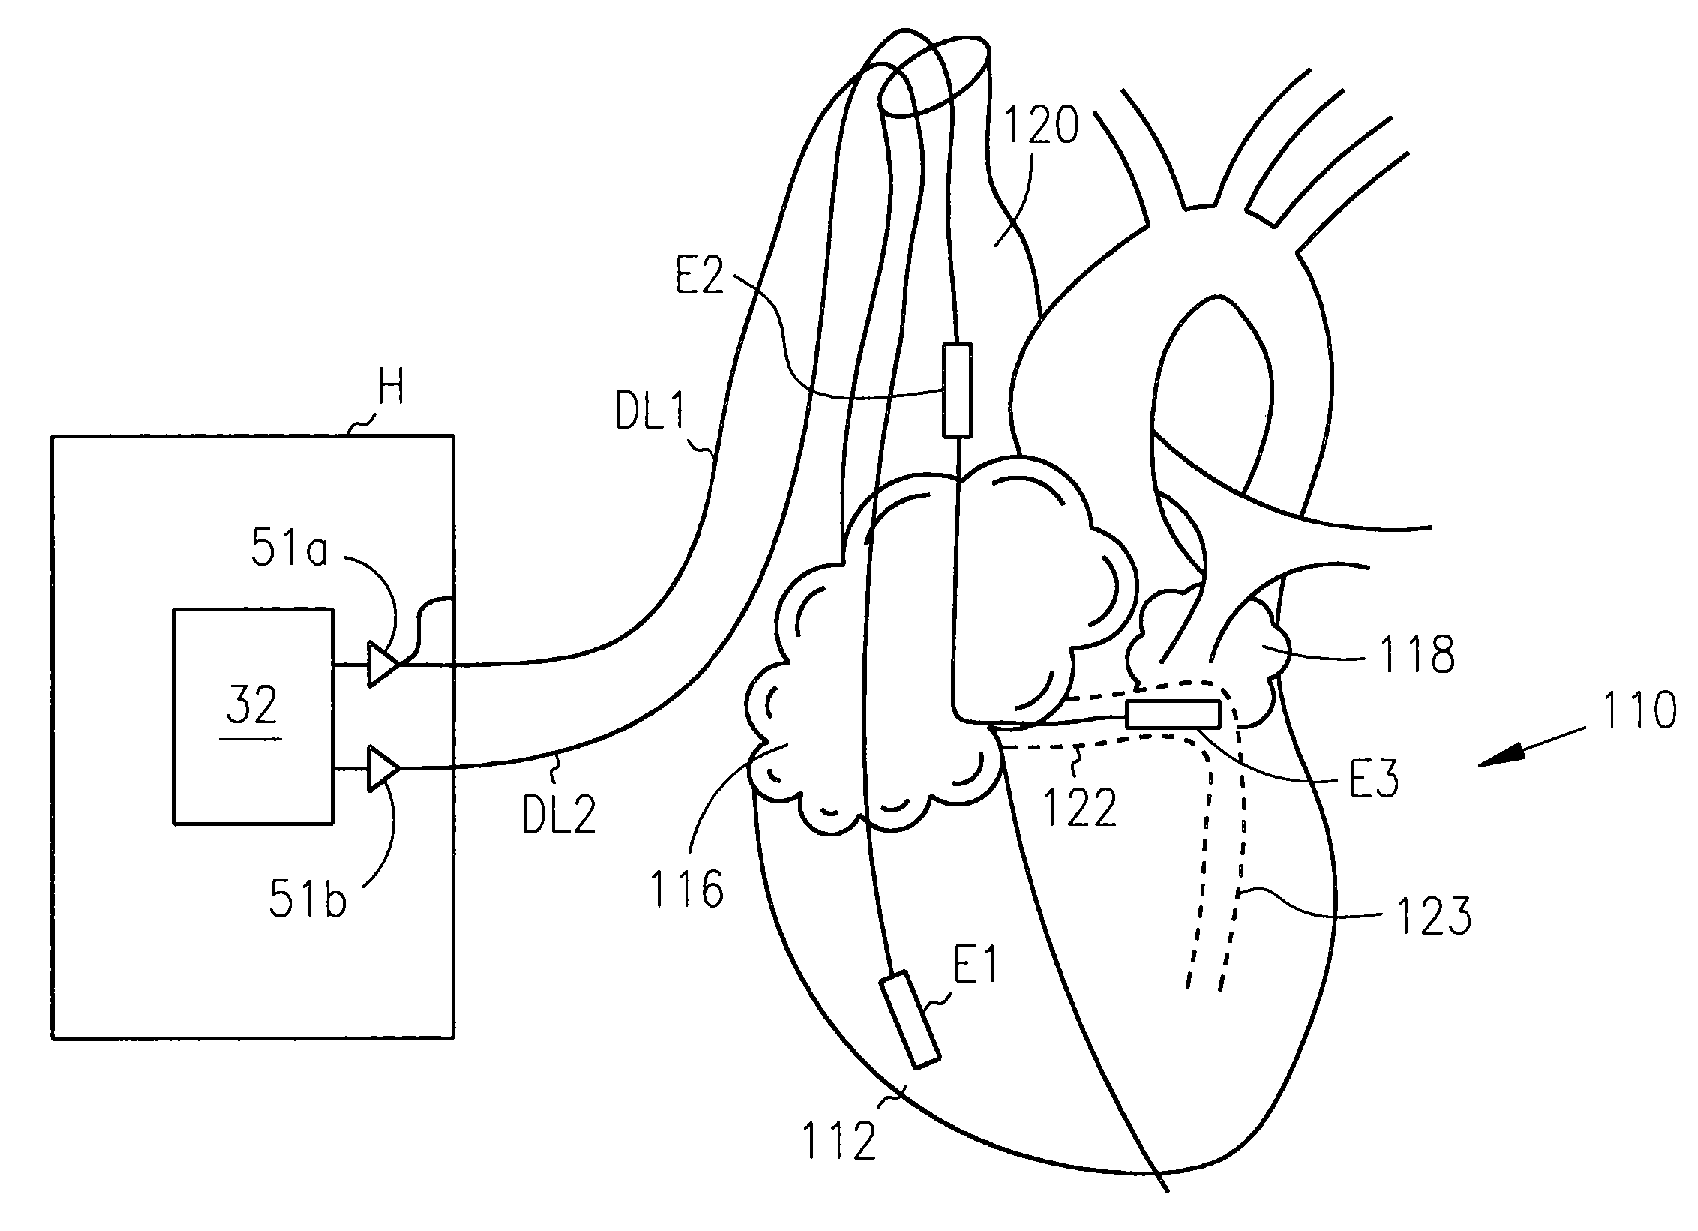 Method and apparatus for termination of cardiac tachyarrhythmias